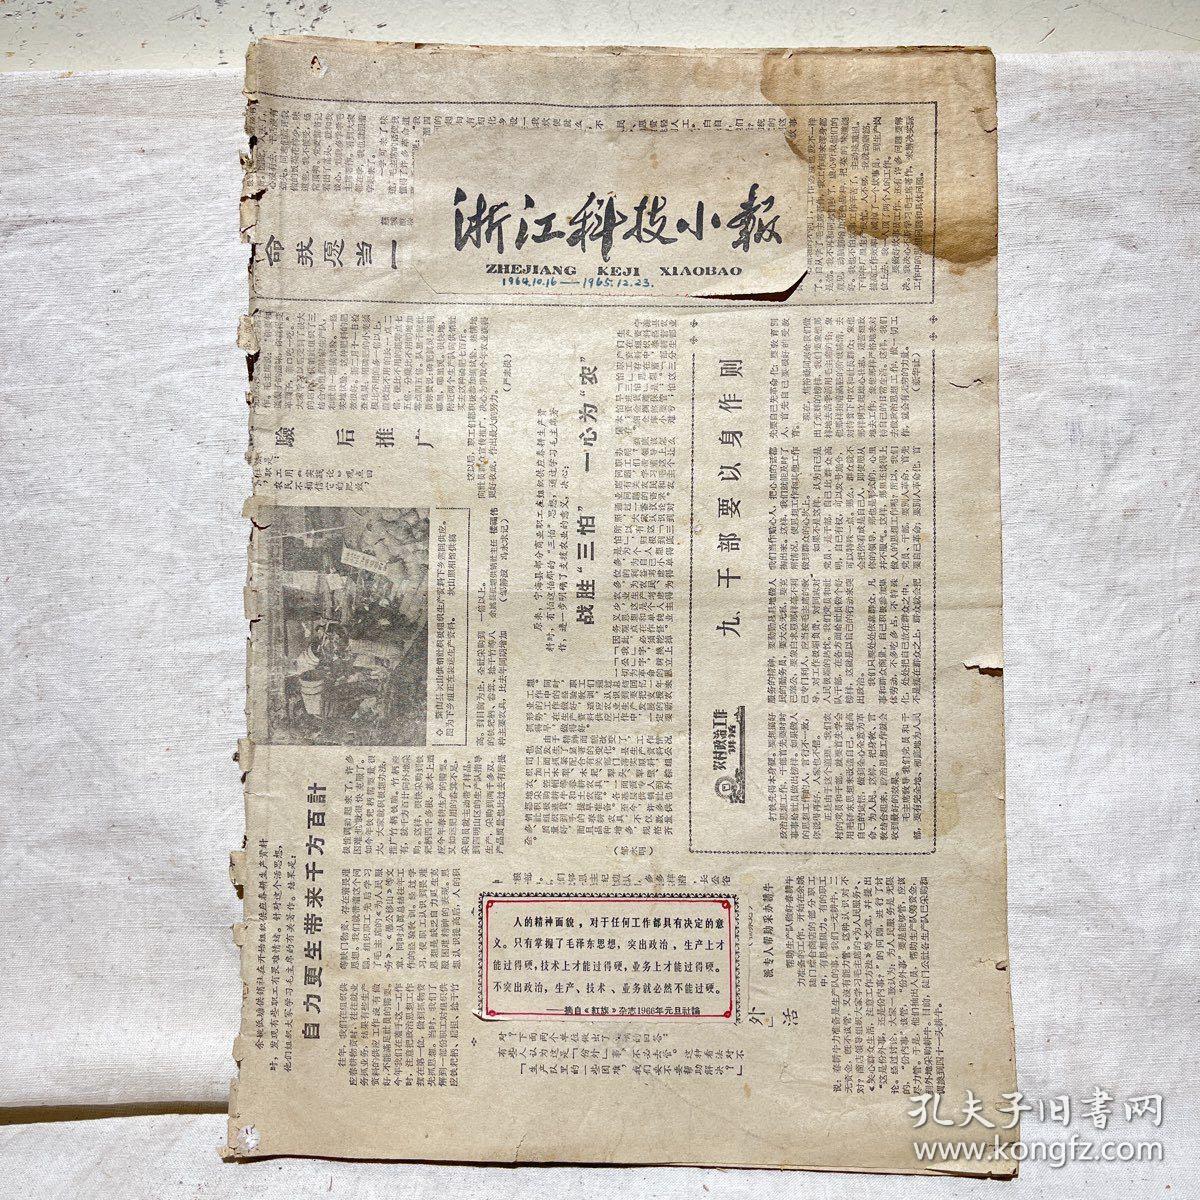 浙江科技小报（1964.10.16-1965.12.23）总第8期到36期，后面几份报纸有残缺，如图